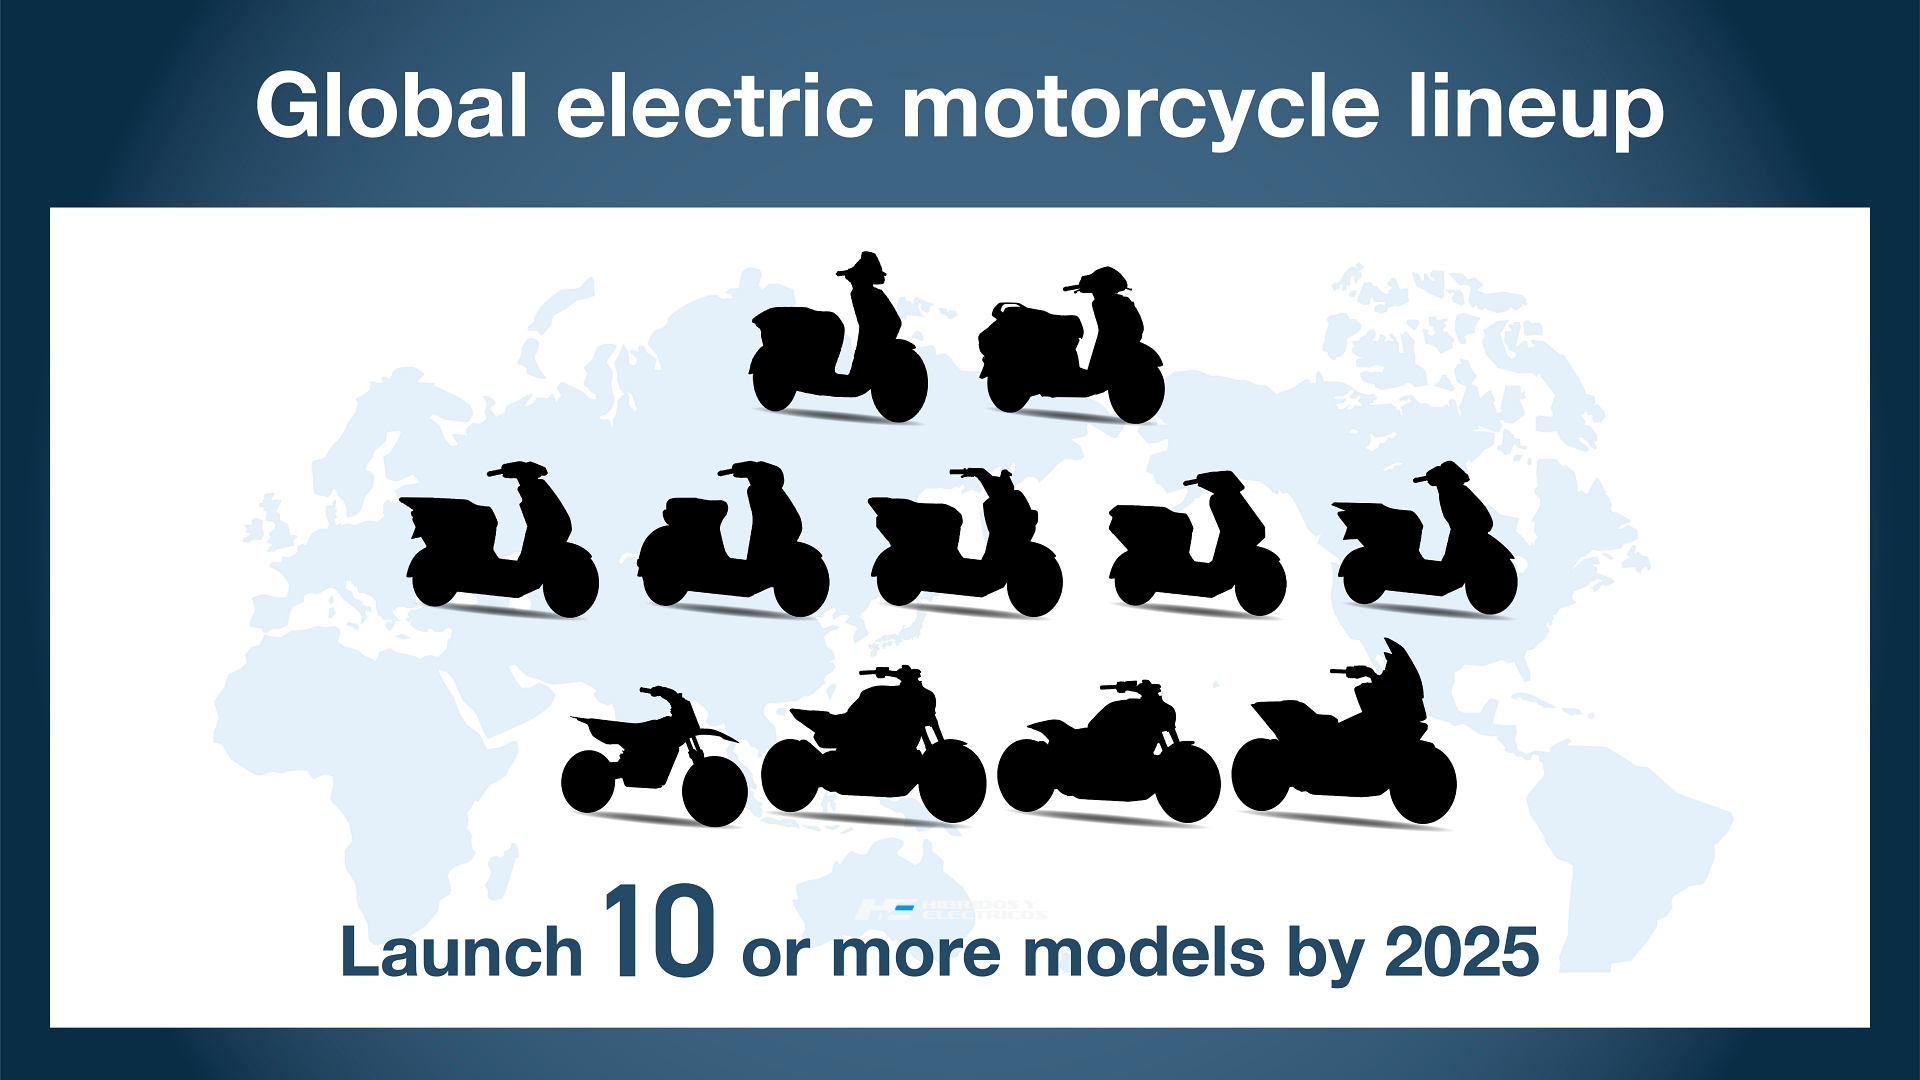 Honda confirma 10 motos eléctricas para 2025.